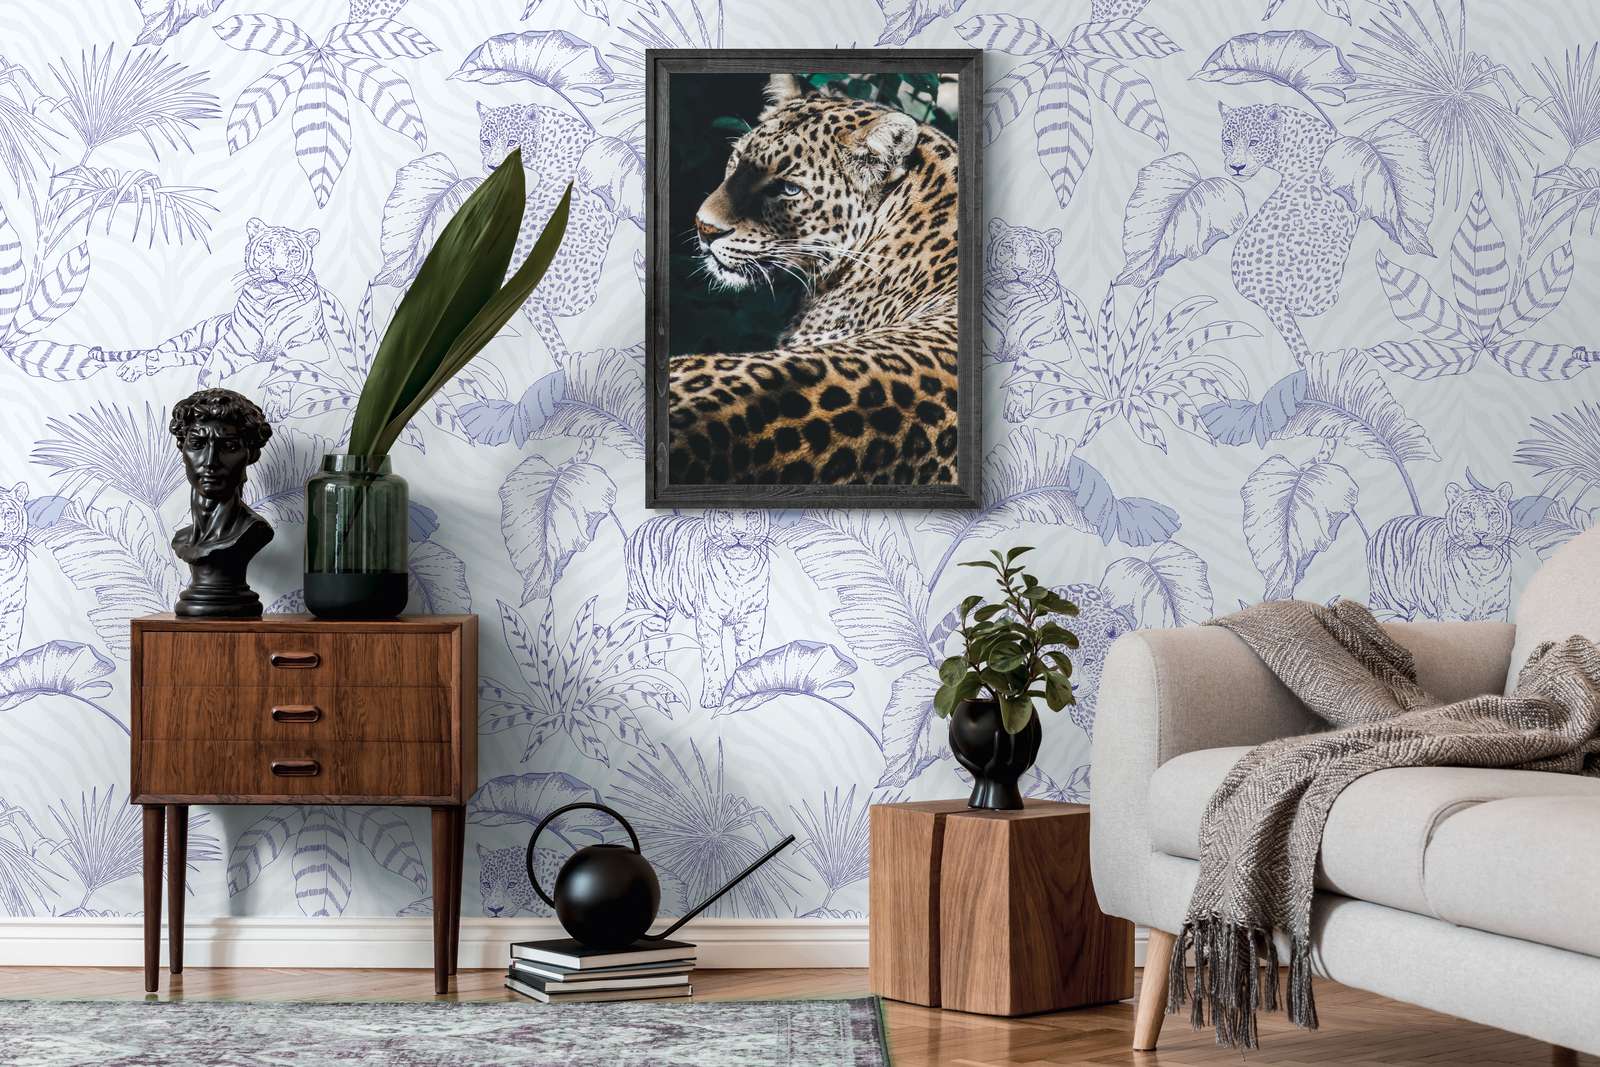             Papel pintado tejido-no tejido con motivo de jungla con tigres y leopardos - morado, blanco
        